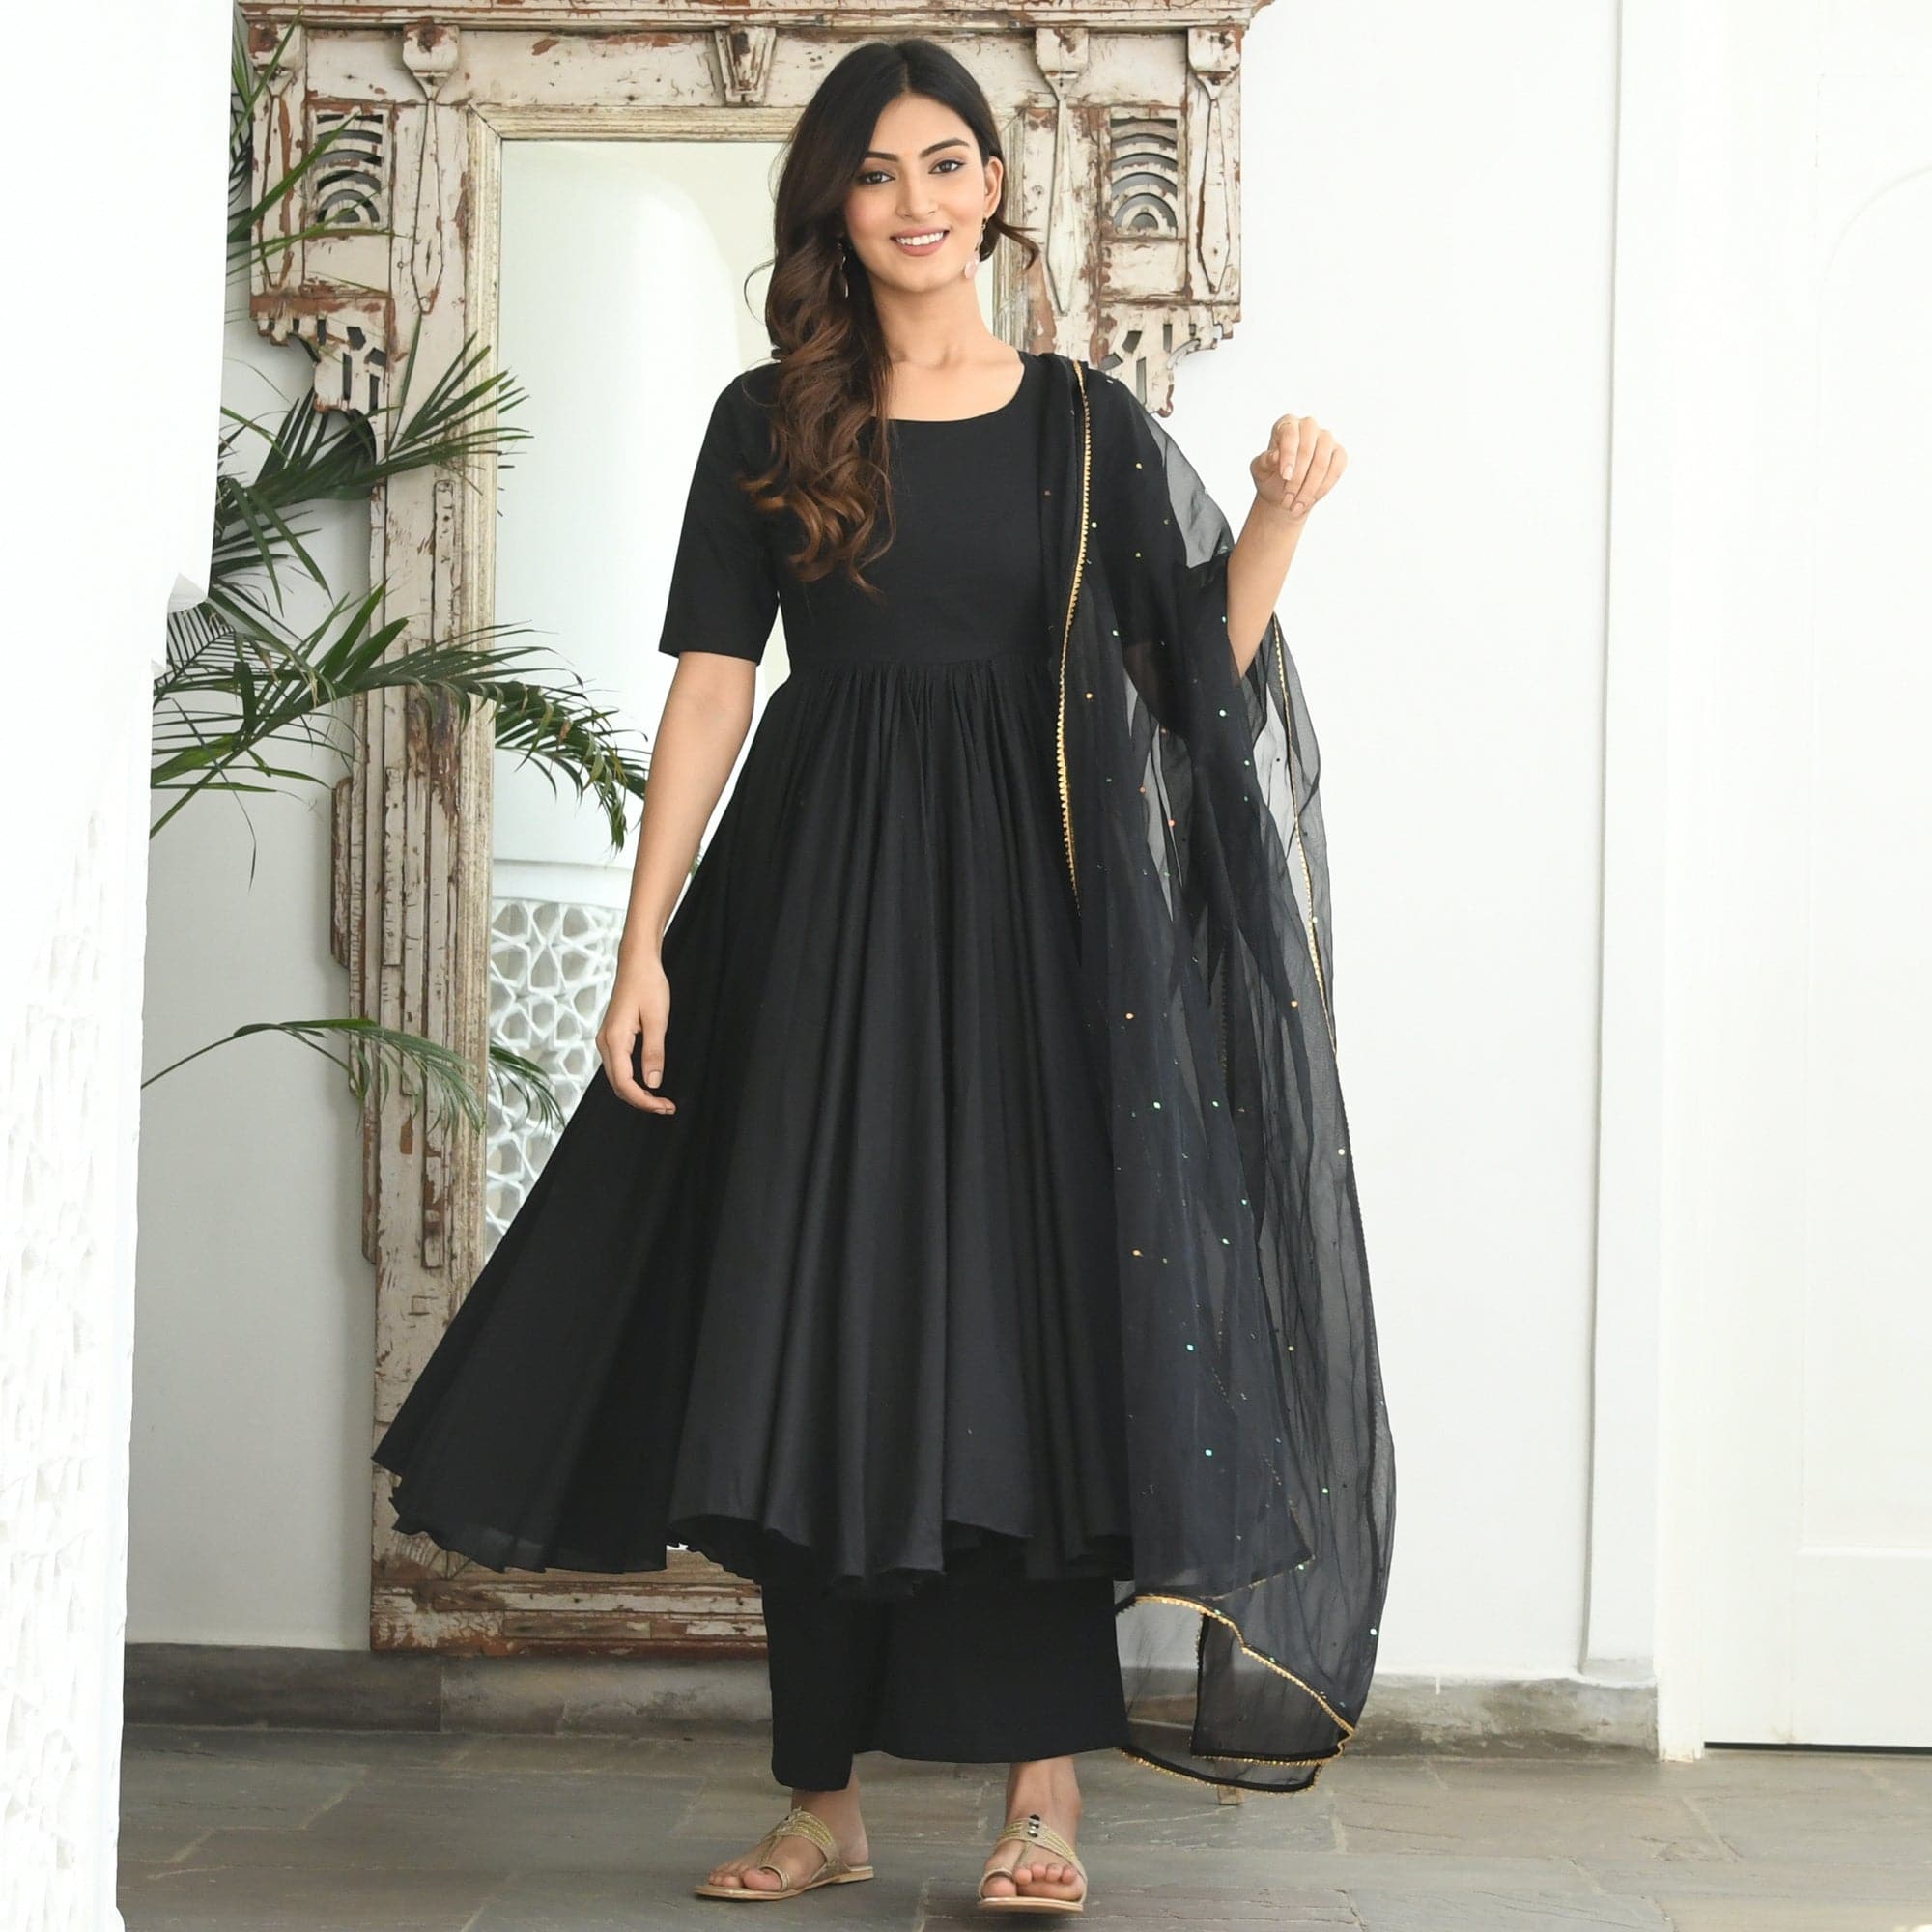 Black Colored Georgette Anarkali Suit With Dupatta - Anarkali Dresses -  Salwar Suits - Indian